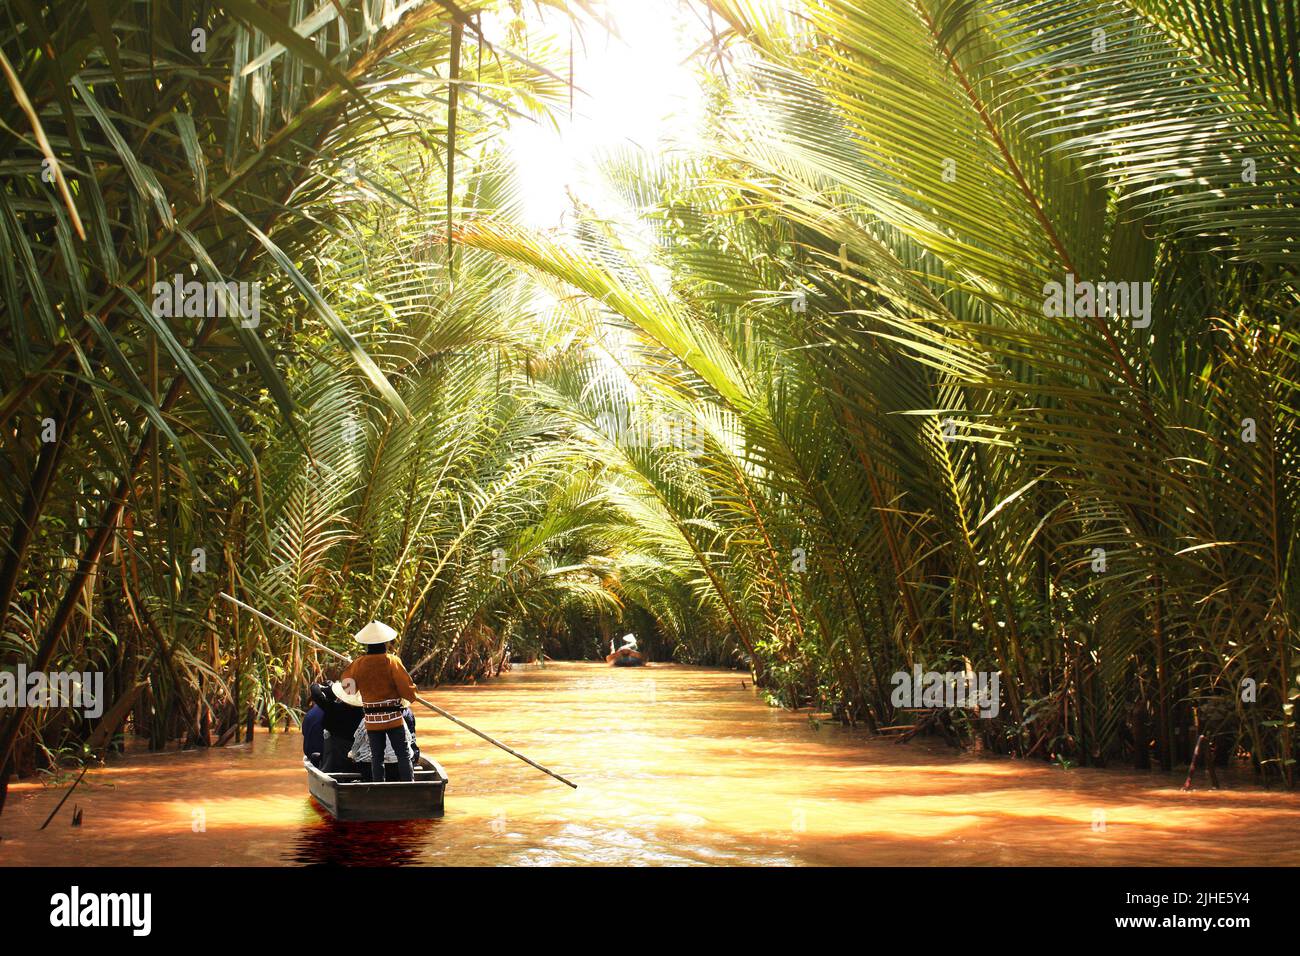 Persone in barca nel delta del fiume Mekong, Vietnam, Asia. Un'attrazione turistica - giro in barca attraverso i canali del delta del Mekong Foto Stock